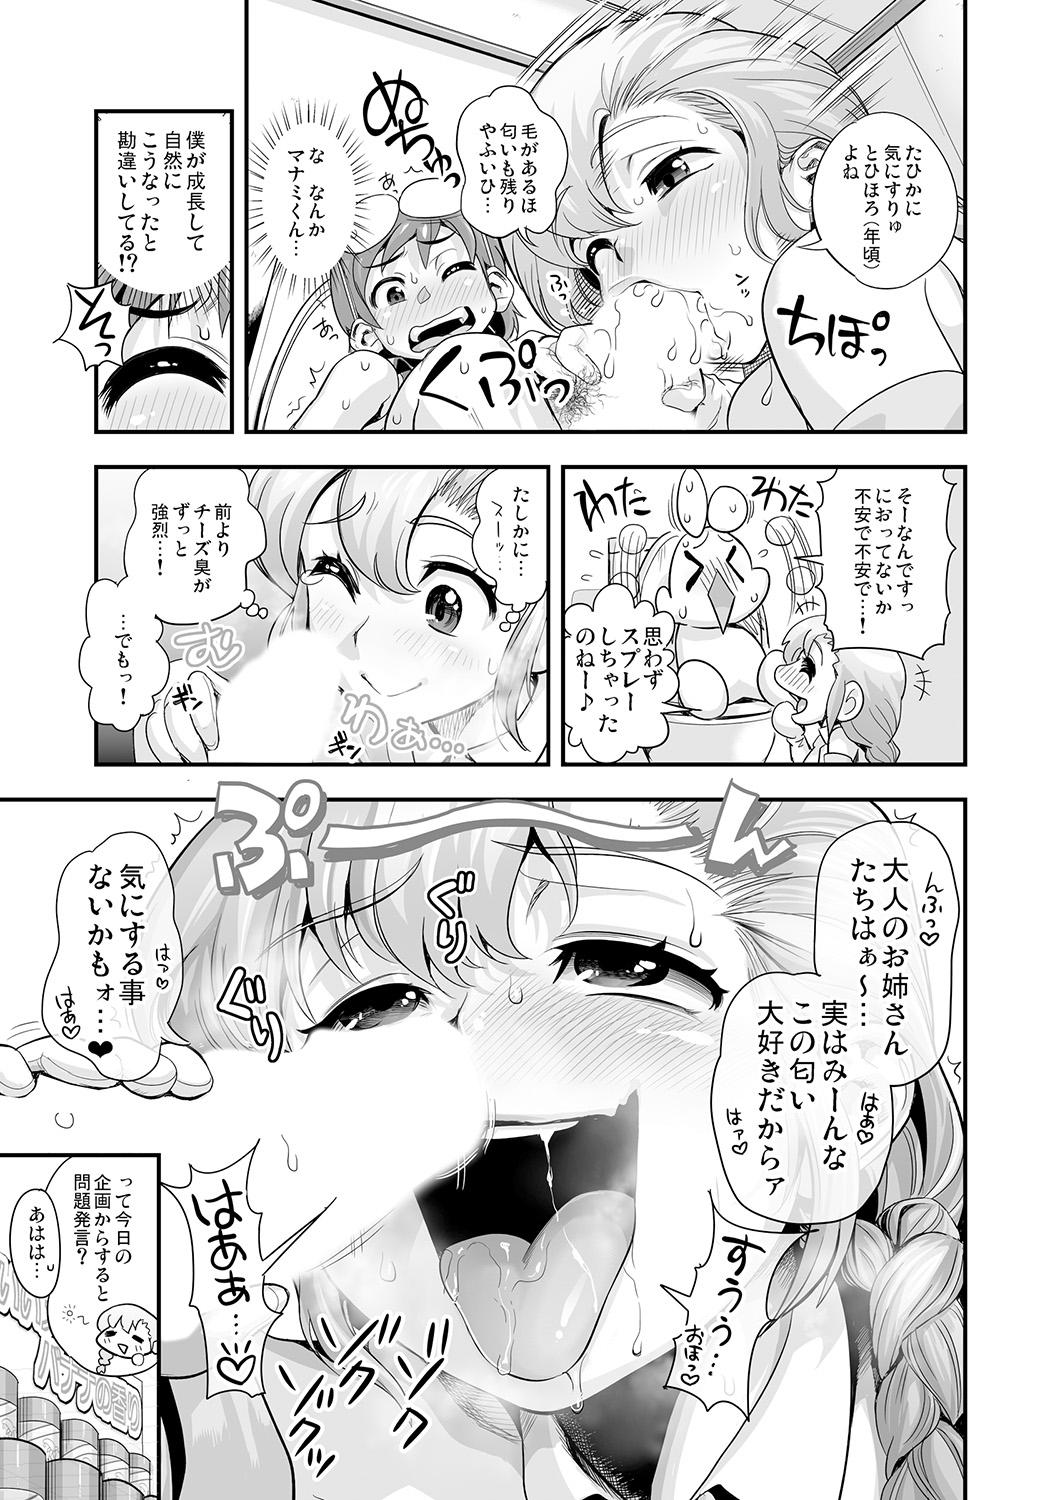 Gaygroup Henshin!? Sukekomas!! Dai 5 wa Amaku Fukuramu Banana no Kaori? Hanra de Yuuwaku Ikisugi Seihin Happyoukai!?! Face - Page 11